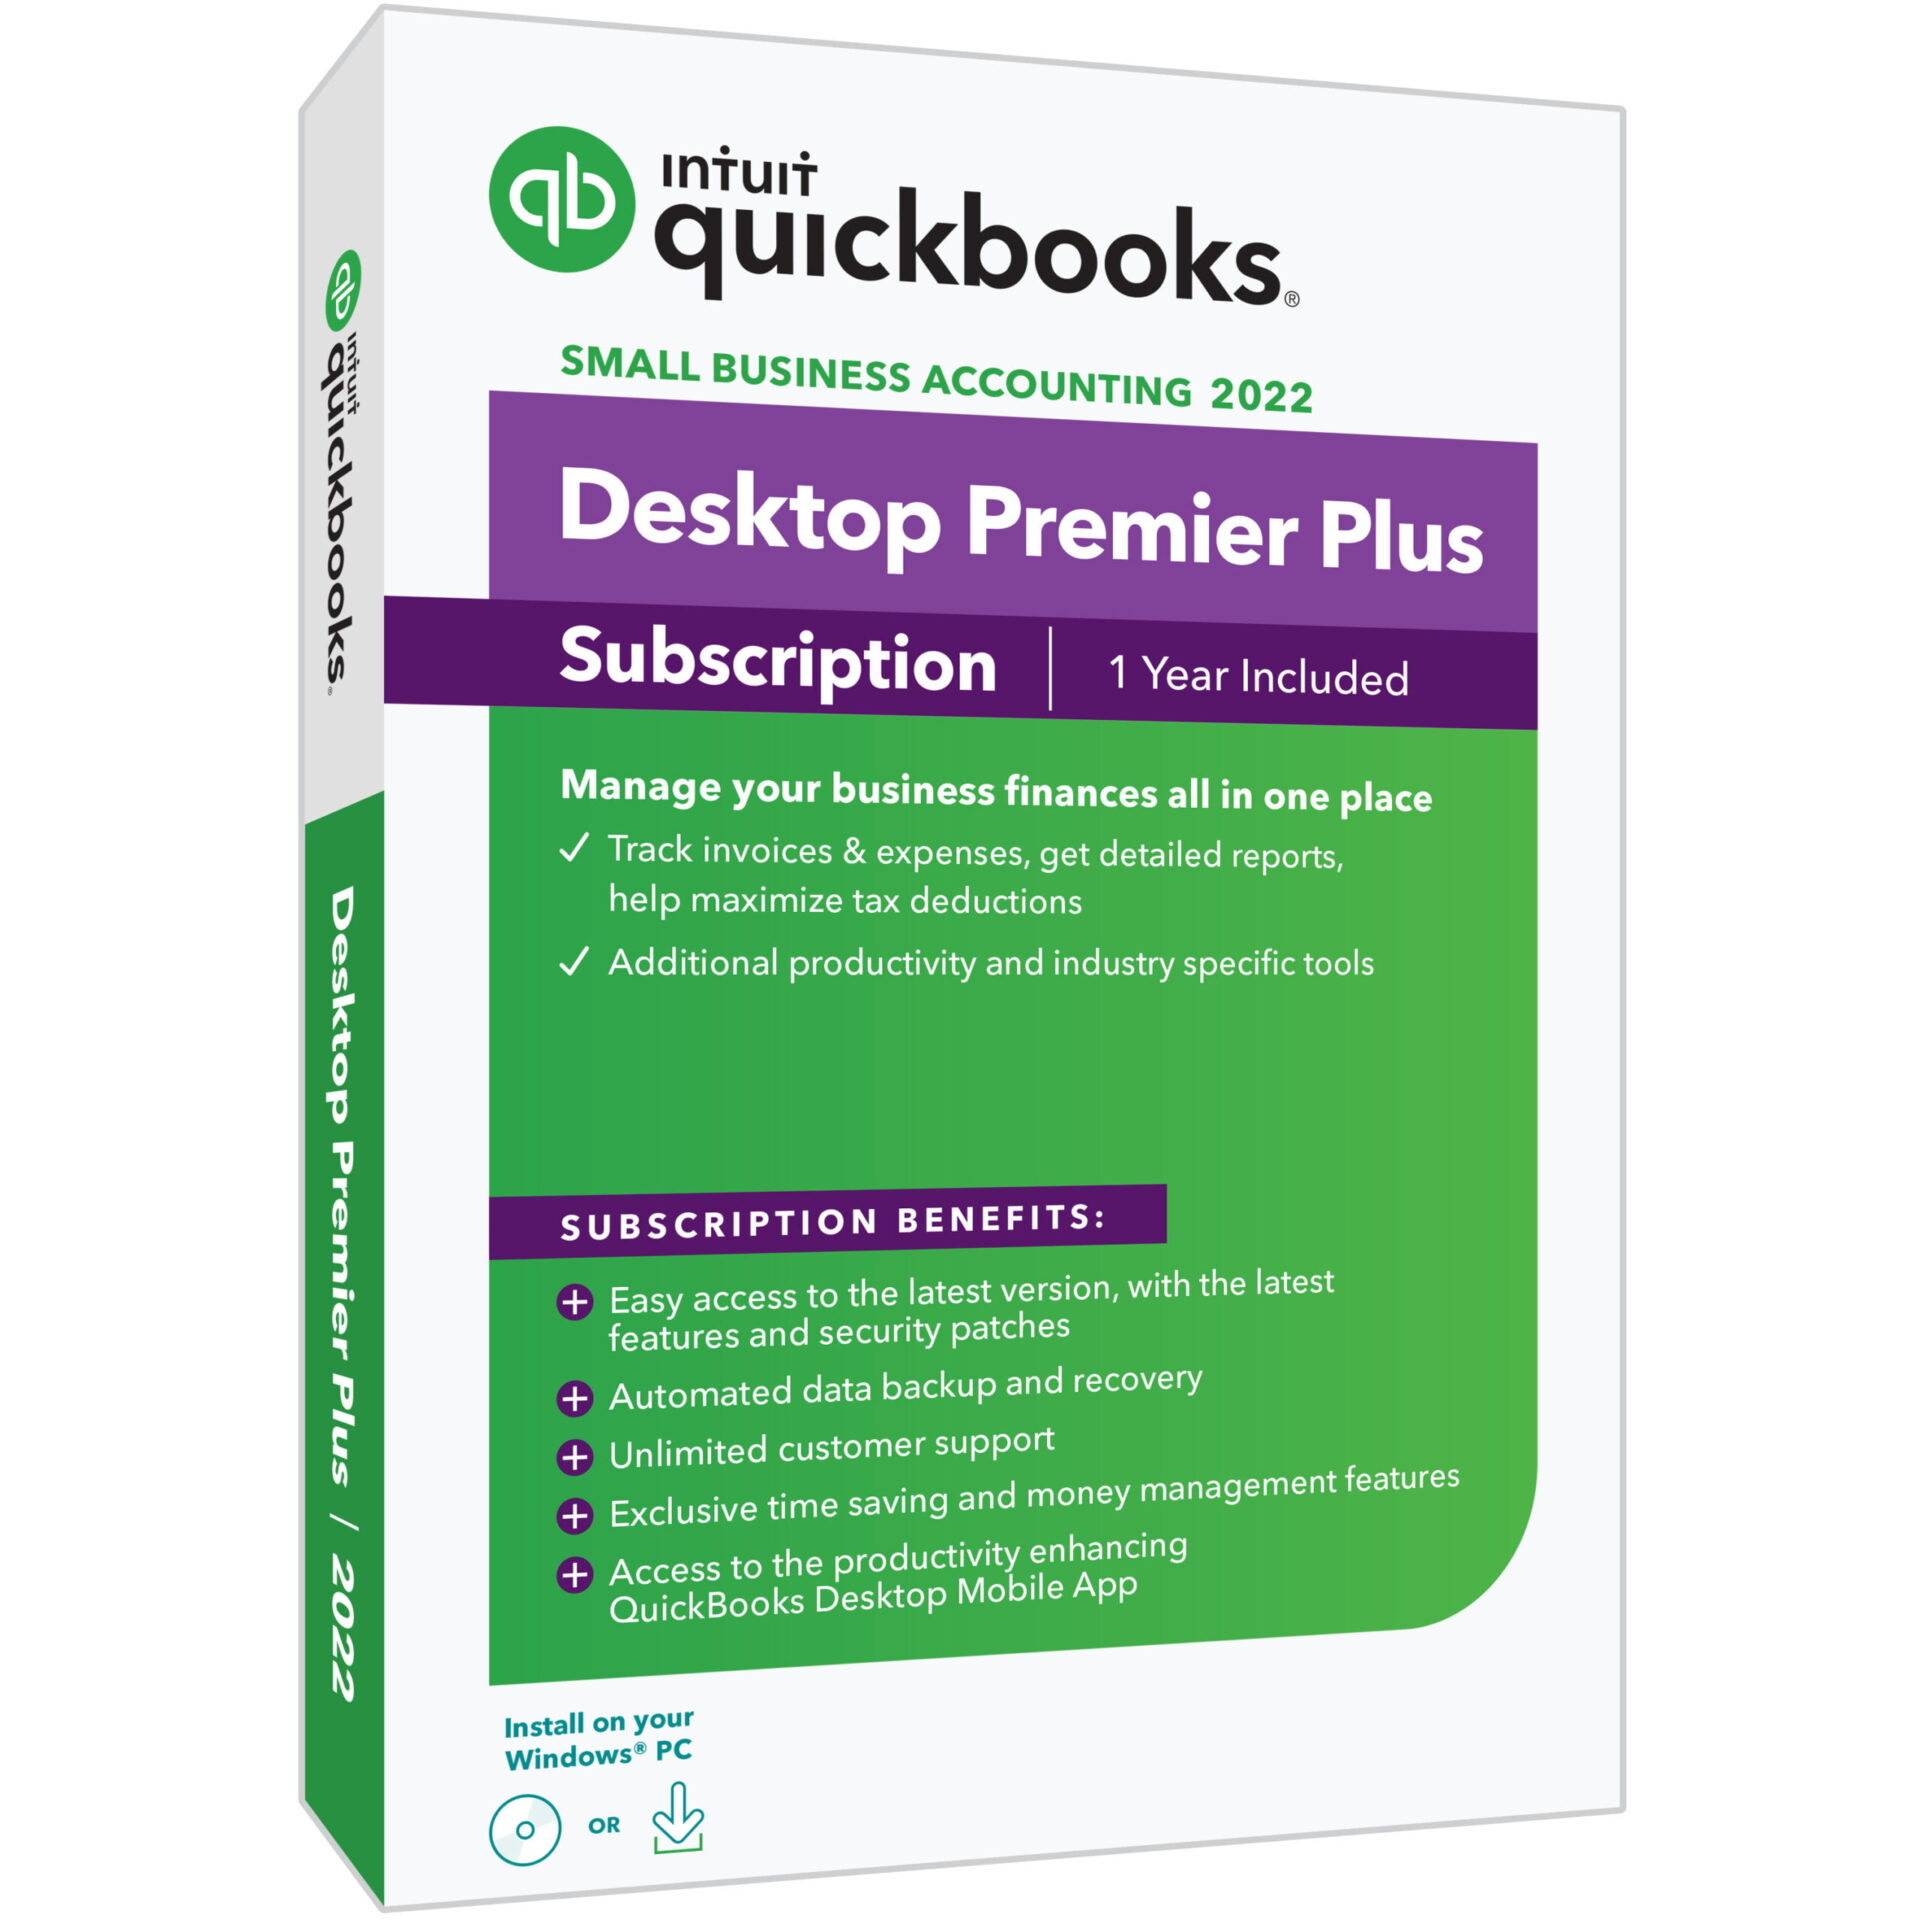 quickbooks download 2022